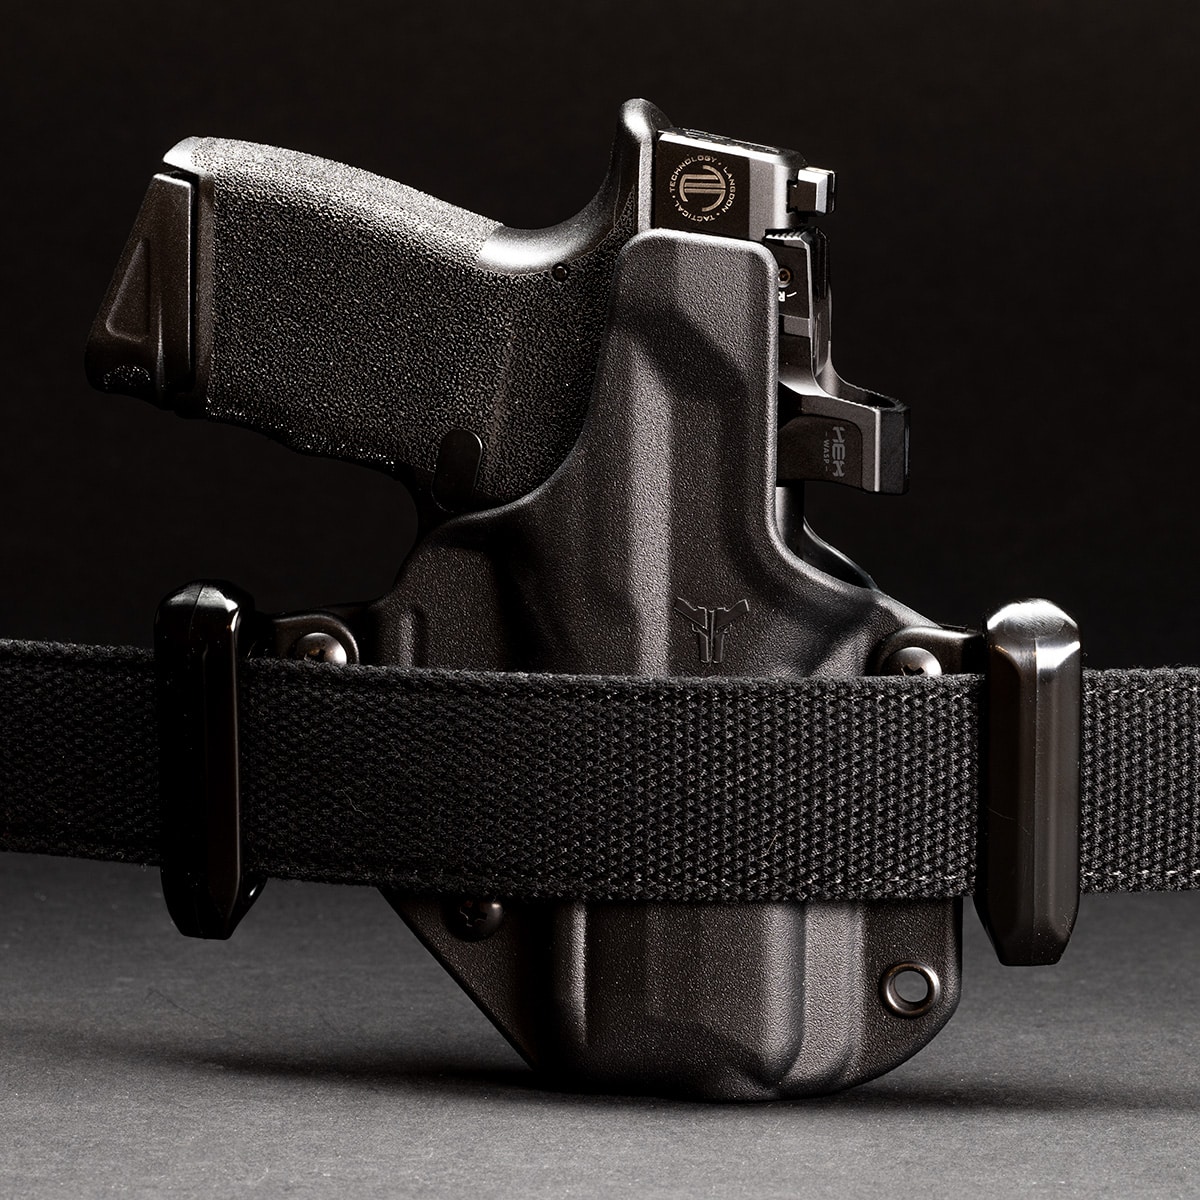 bladetech holster mounted on a belt